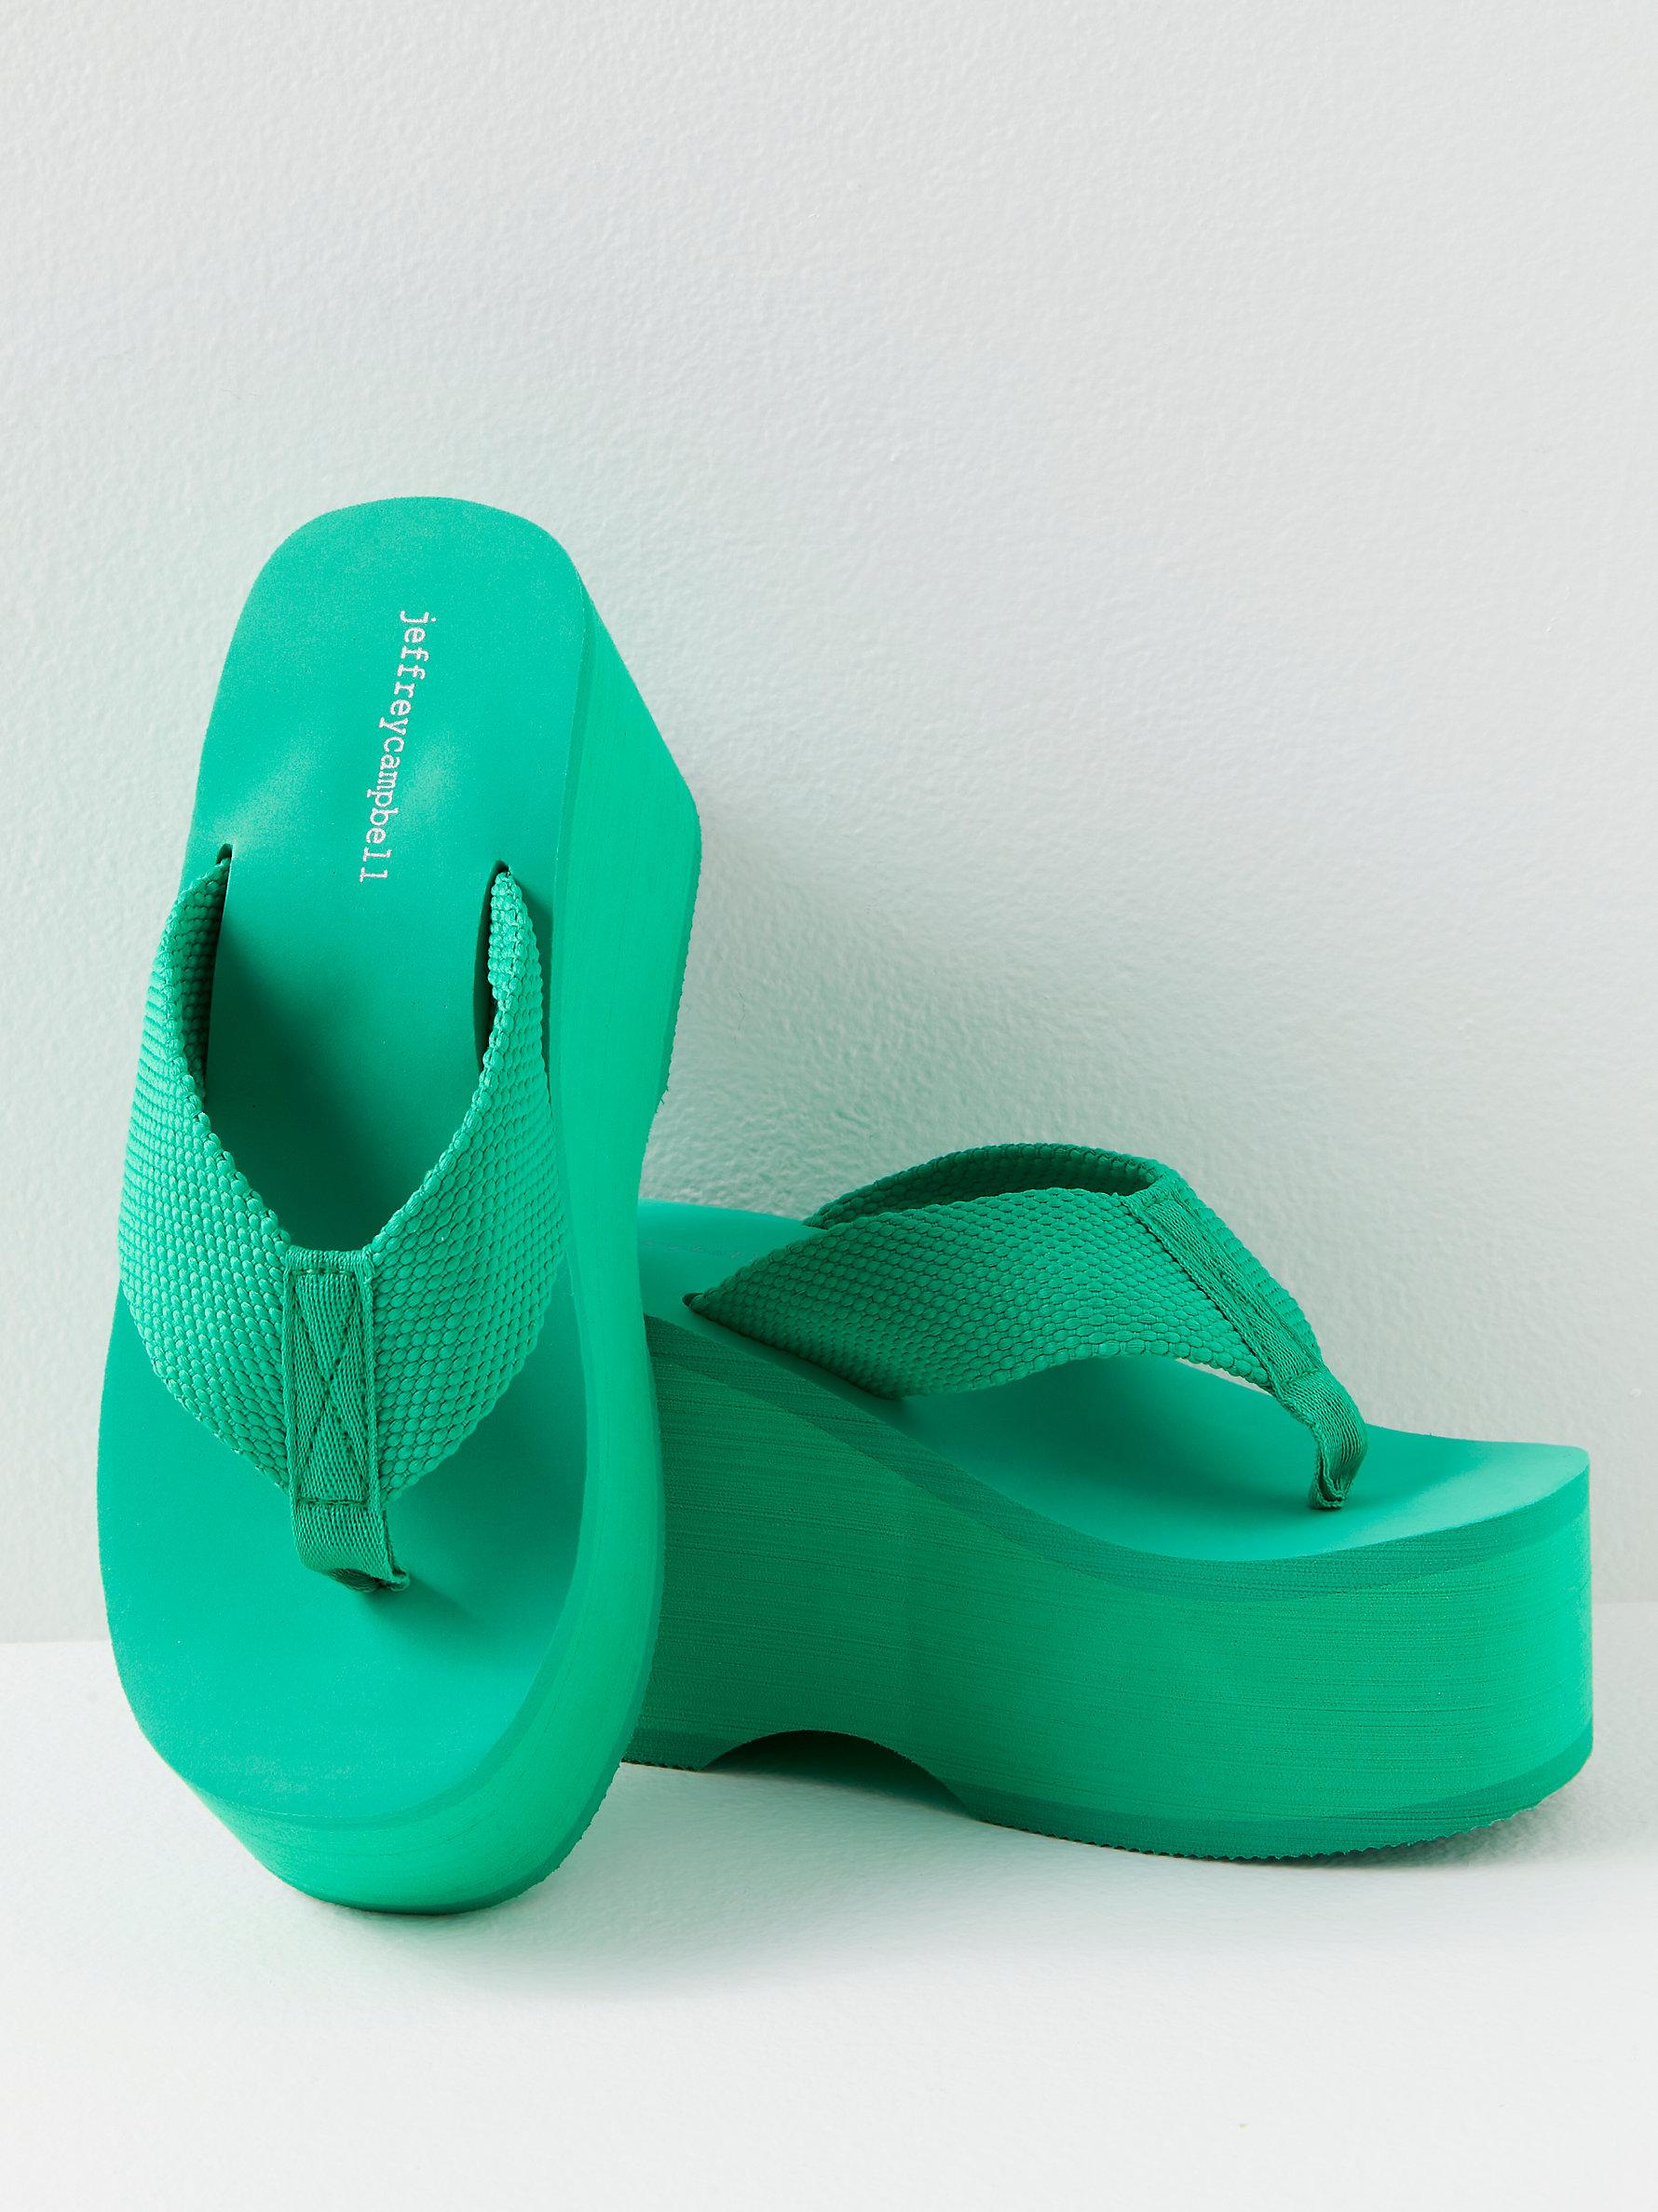 Turquoise Sandals Slip on Boho Flip Flops Pool Thong Slippers